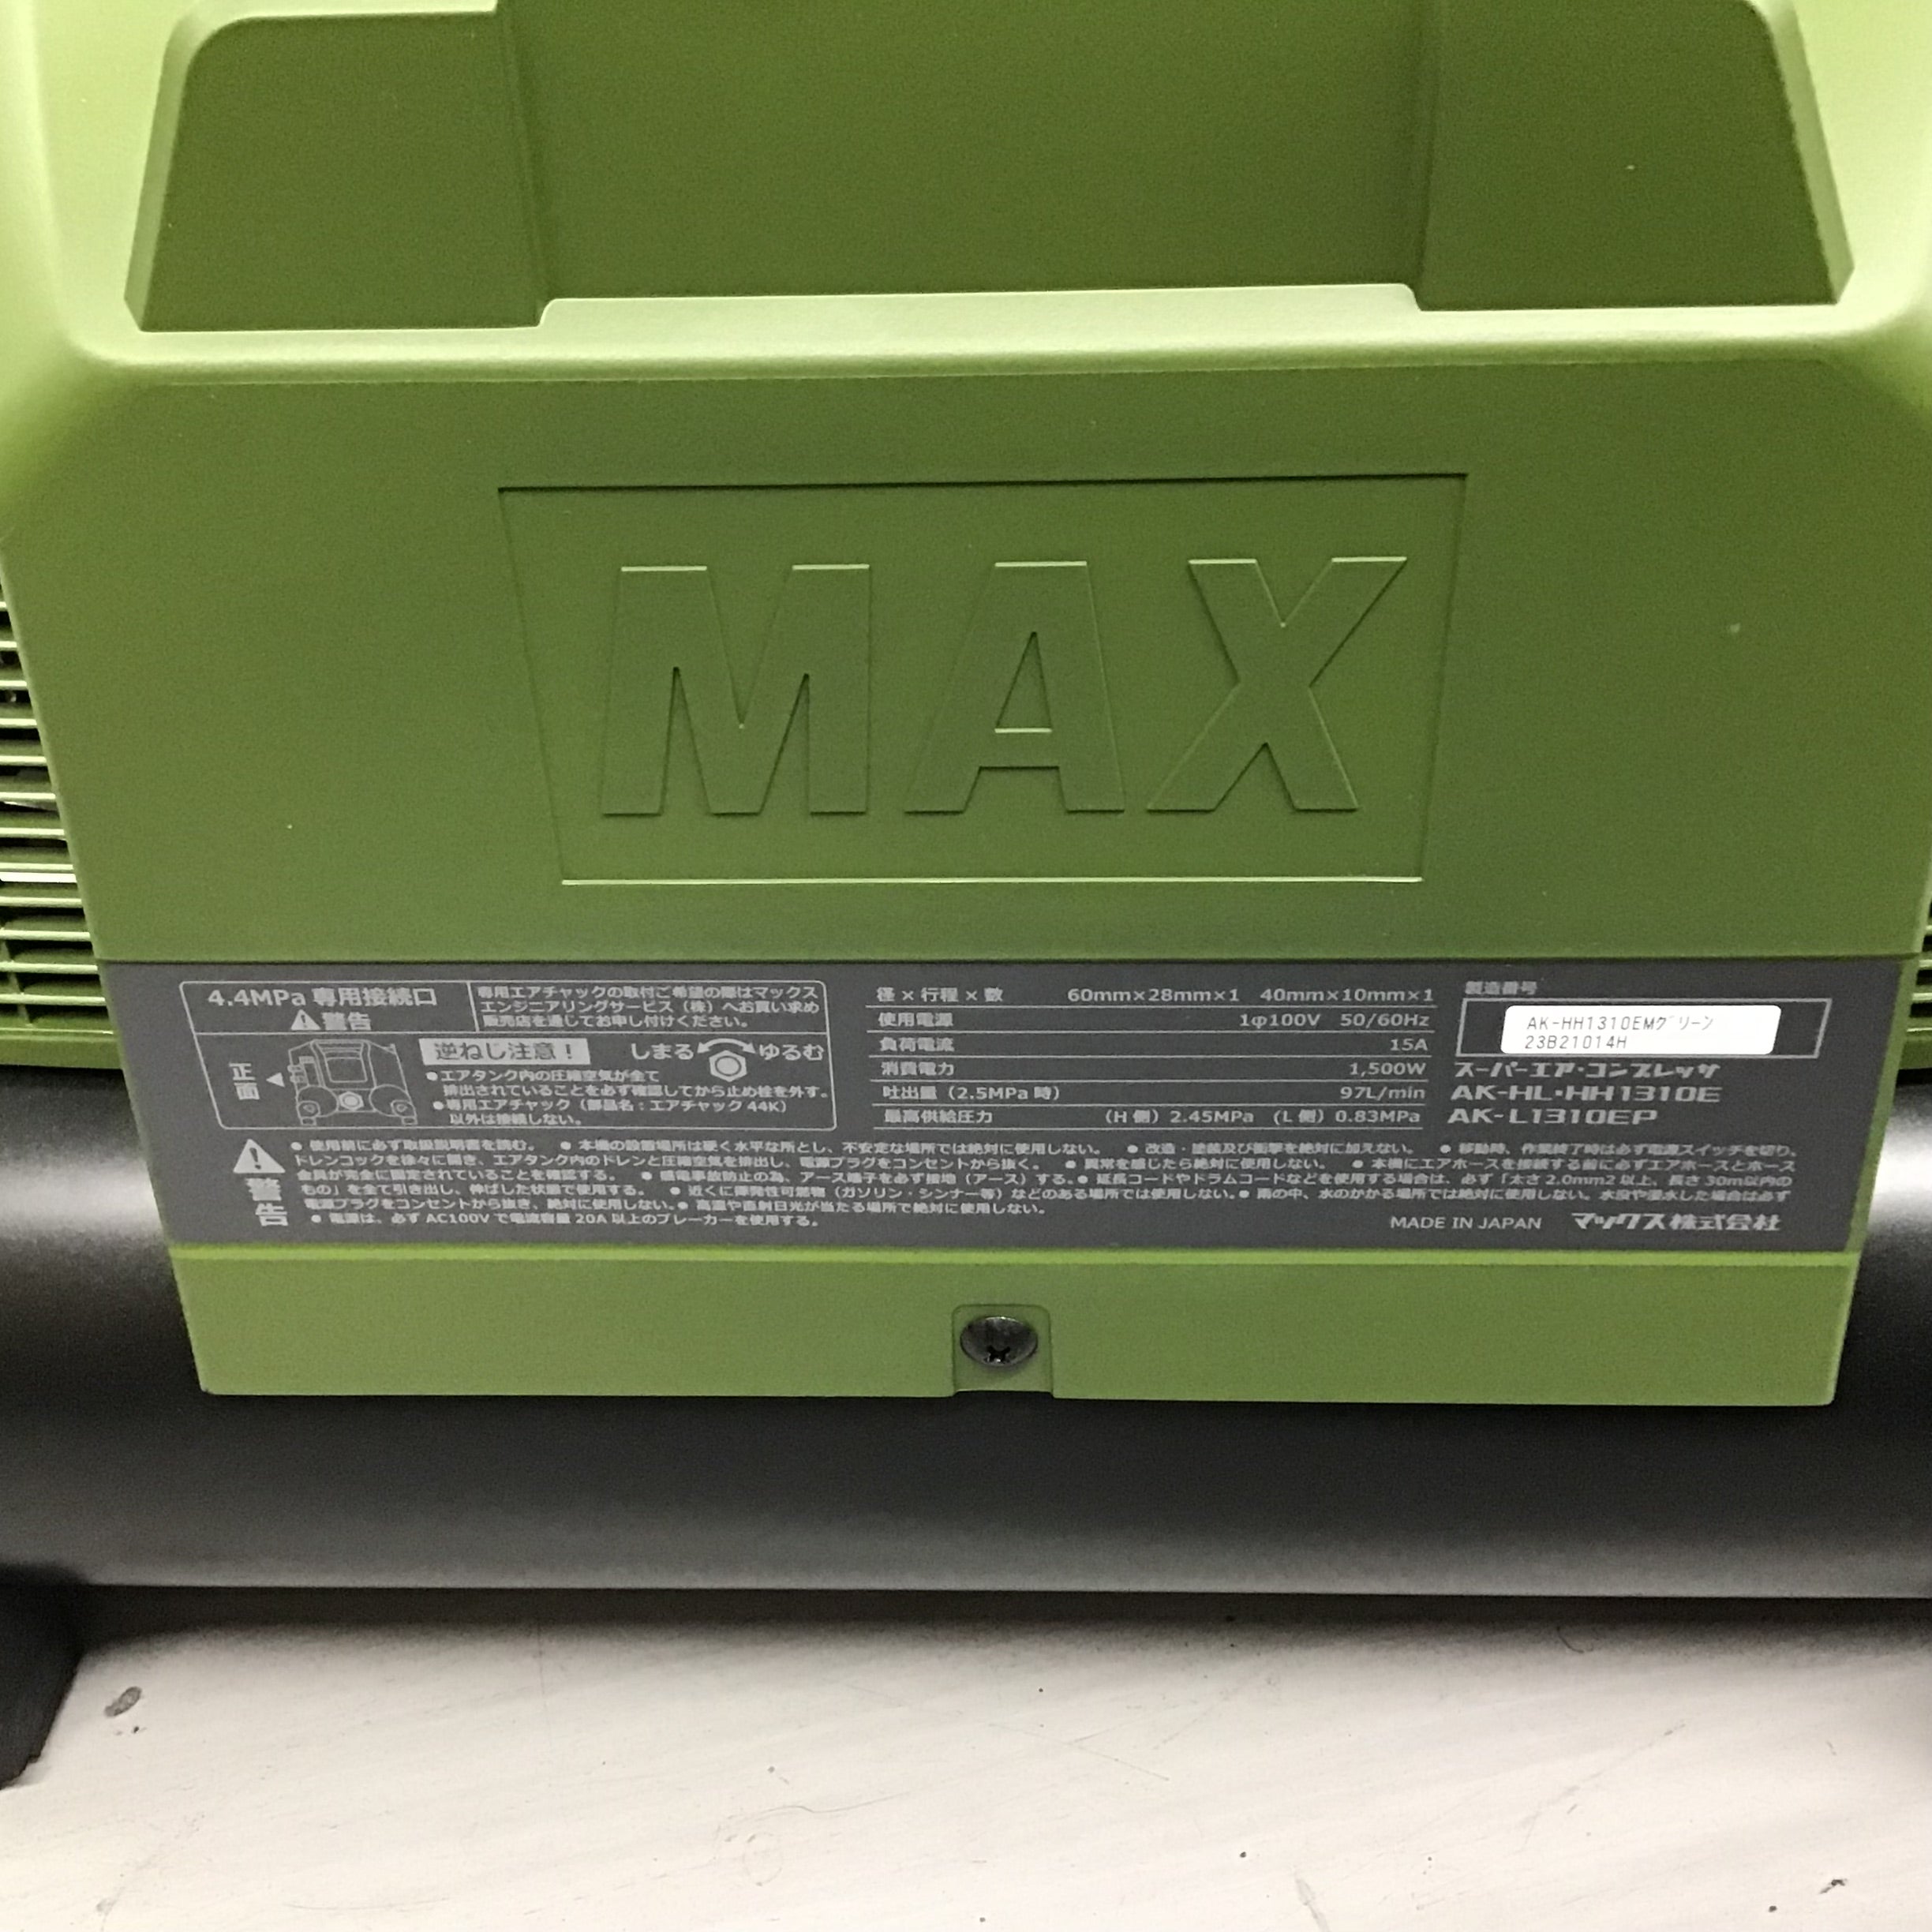 ☆マックス(MAX) エアコンプレッサー AK-HH1310E_ミリタリーグリーン 